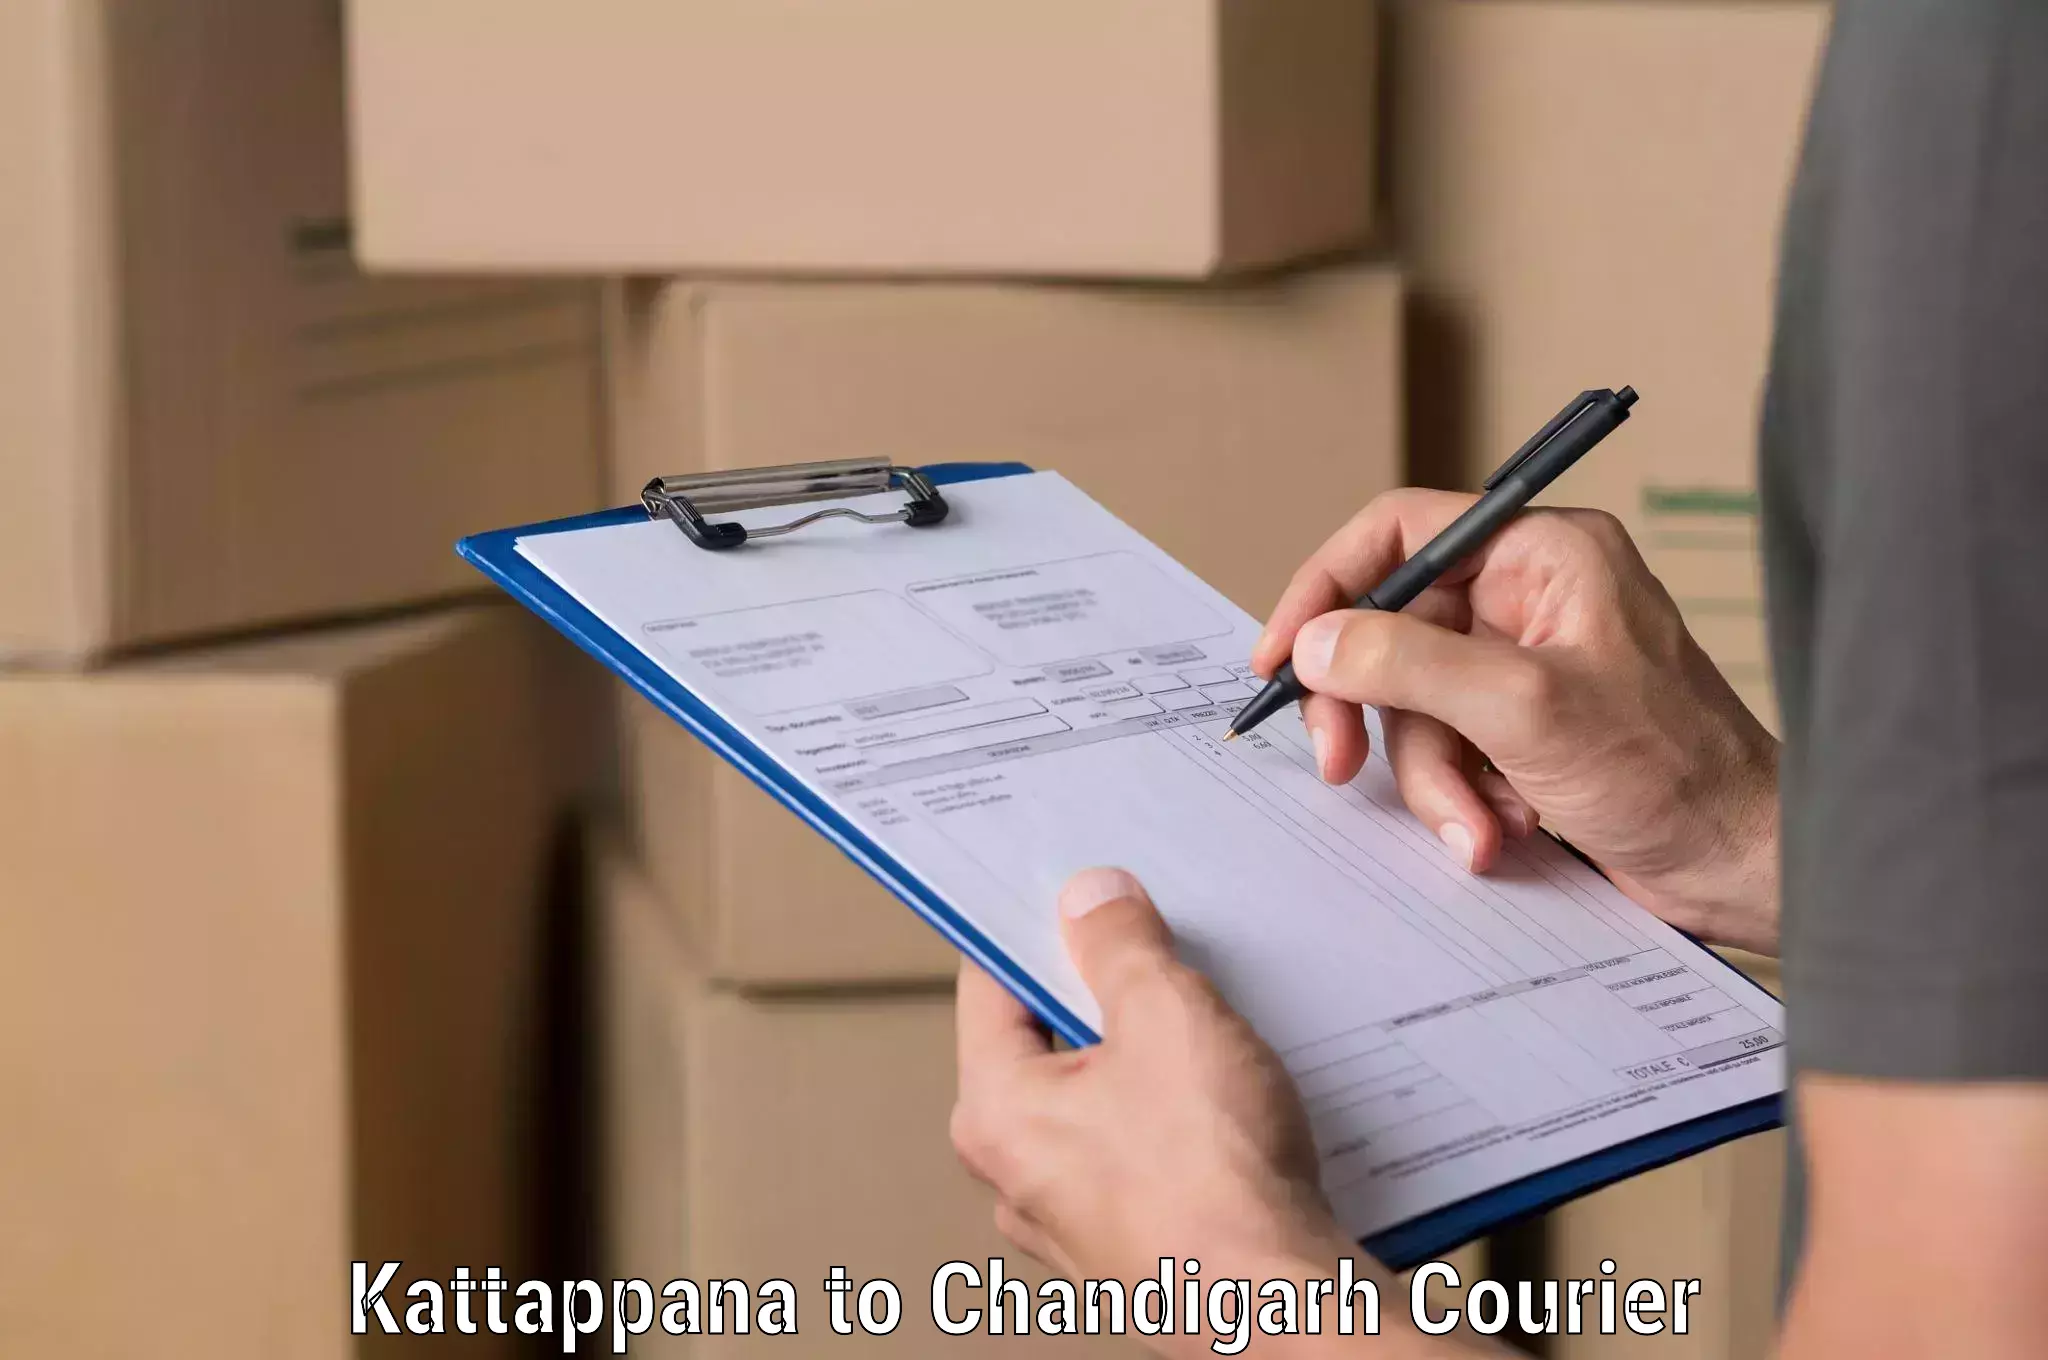 Express logistics service Kattappana to Chandigarh